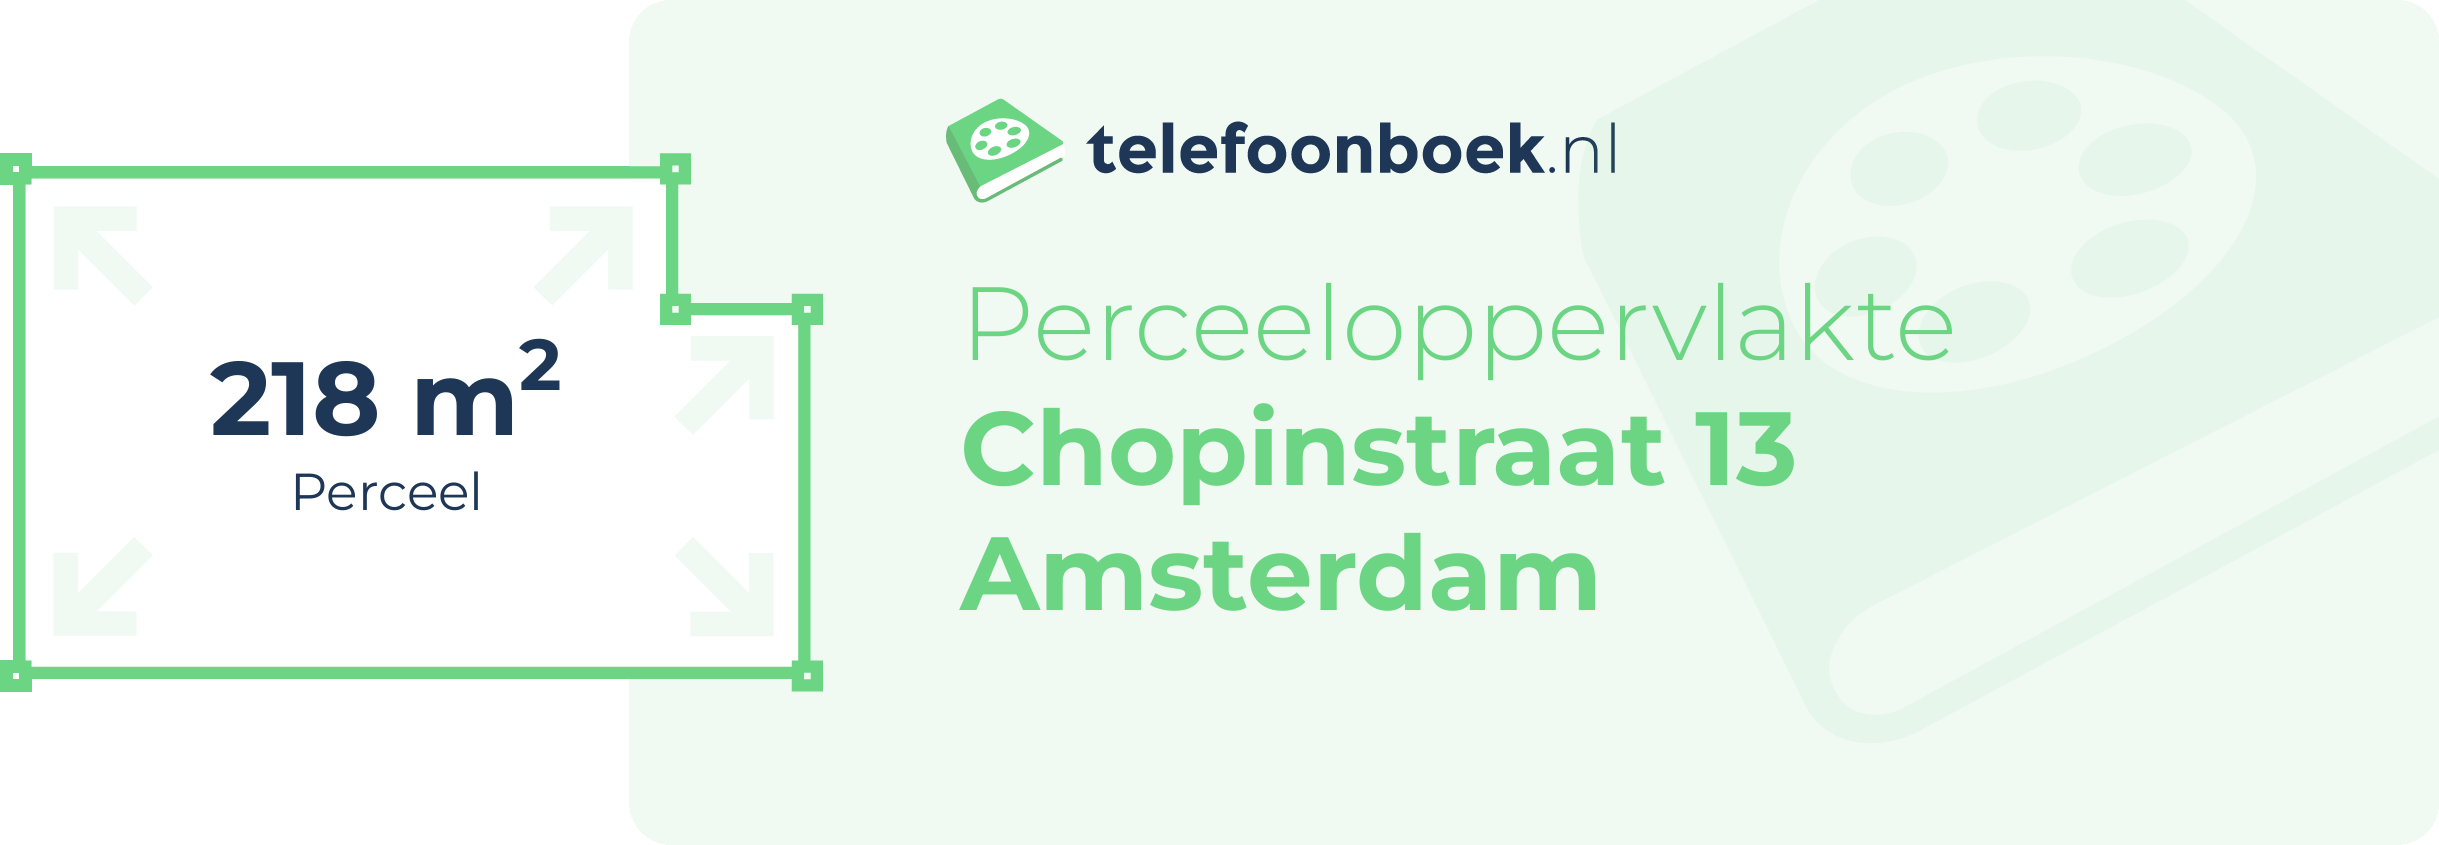 Perceeloppervlakte Chopinstraat 13 Amsterdam